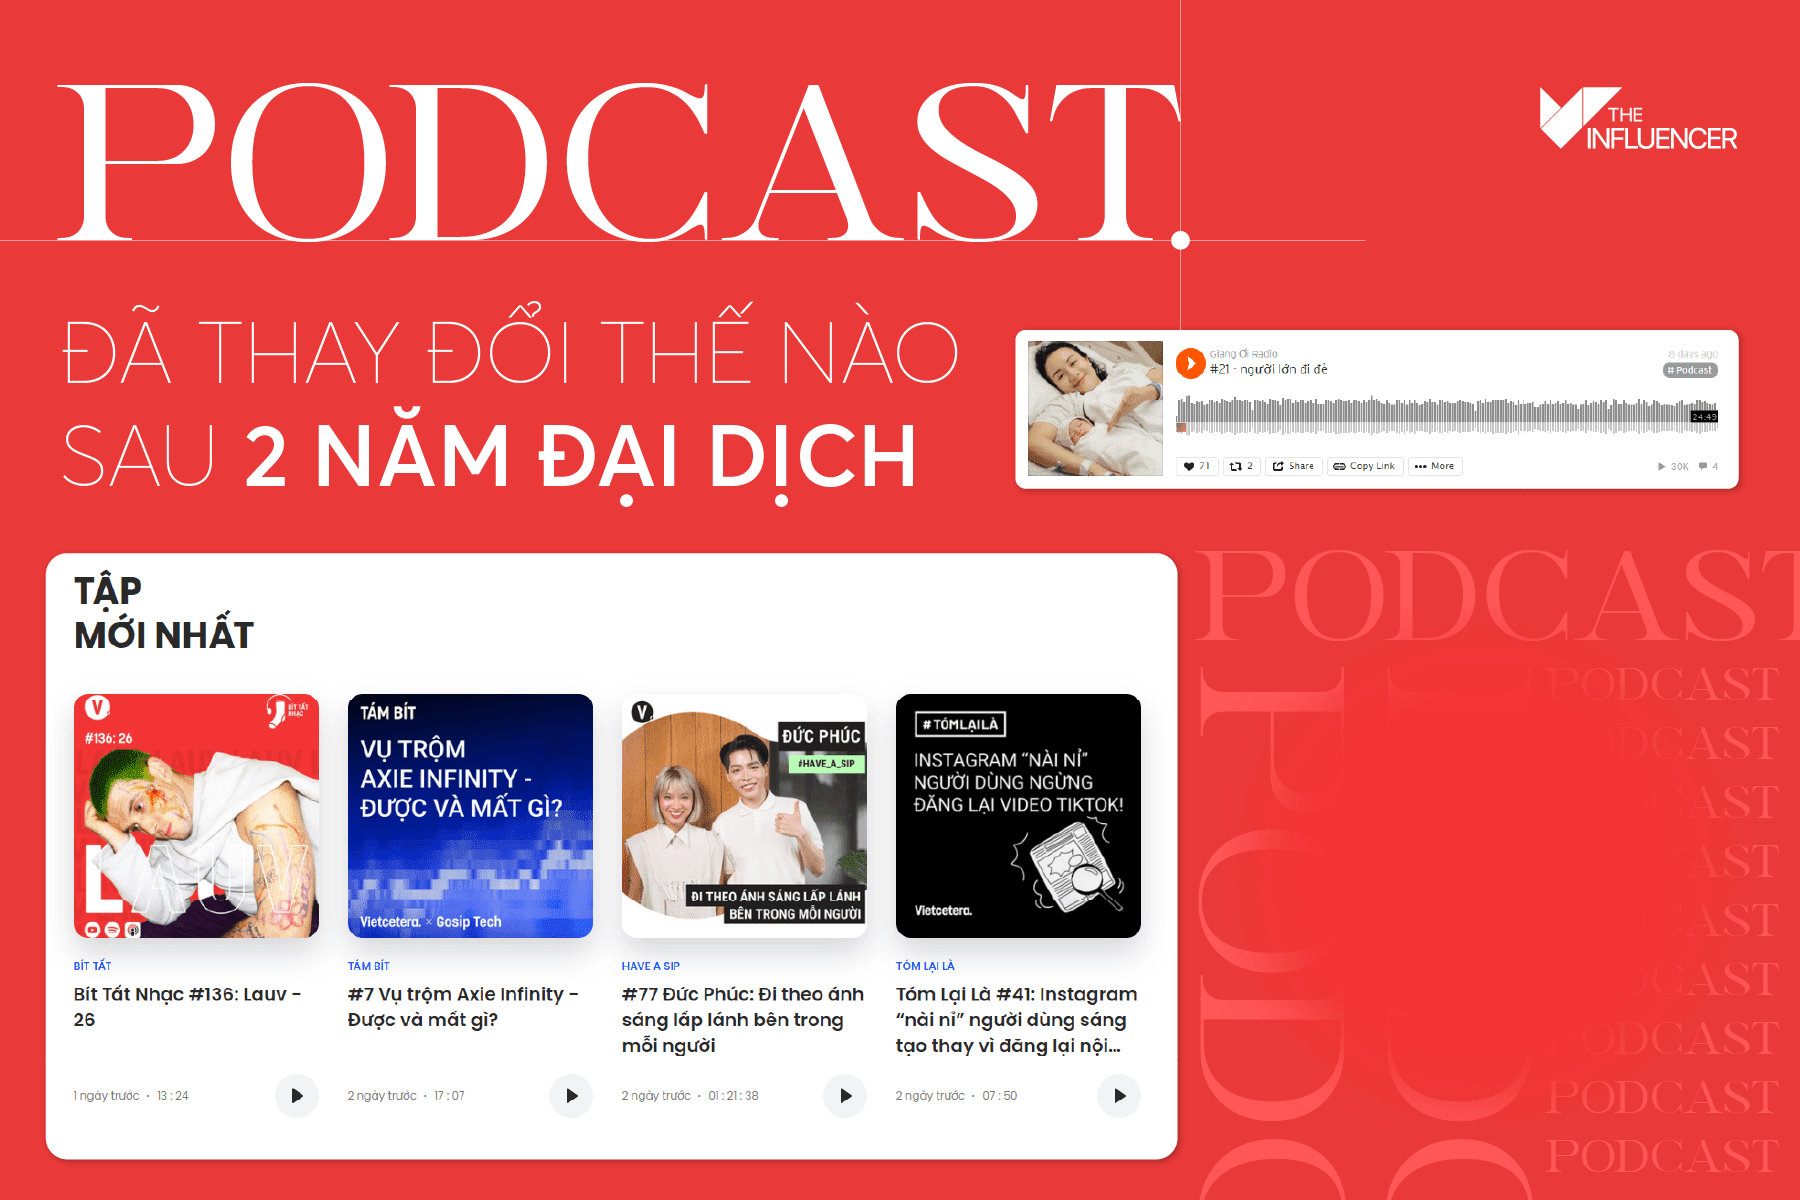 Podcast đã thay đổi thế nào sau 2 năm đại dịch